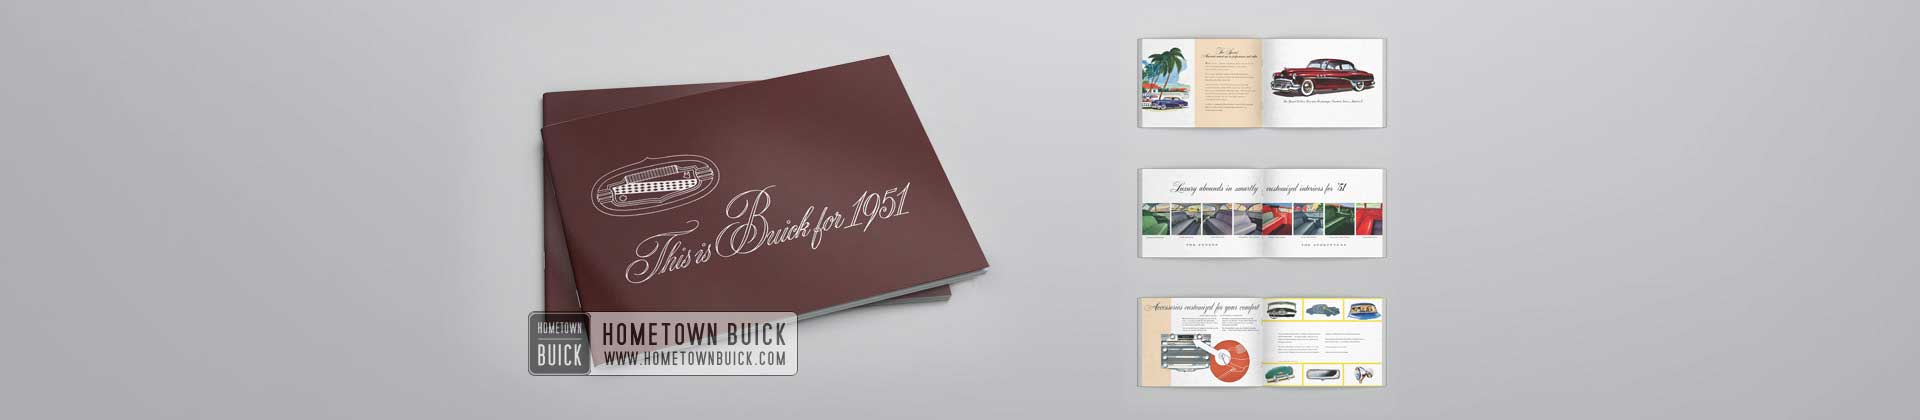 1951 Buick Showroom Album